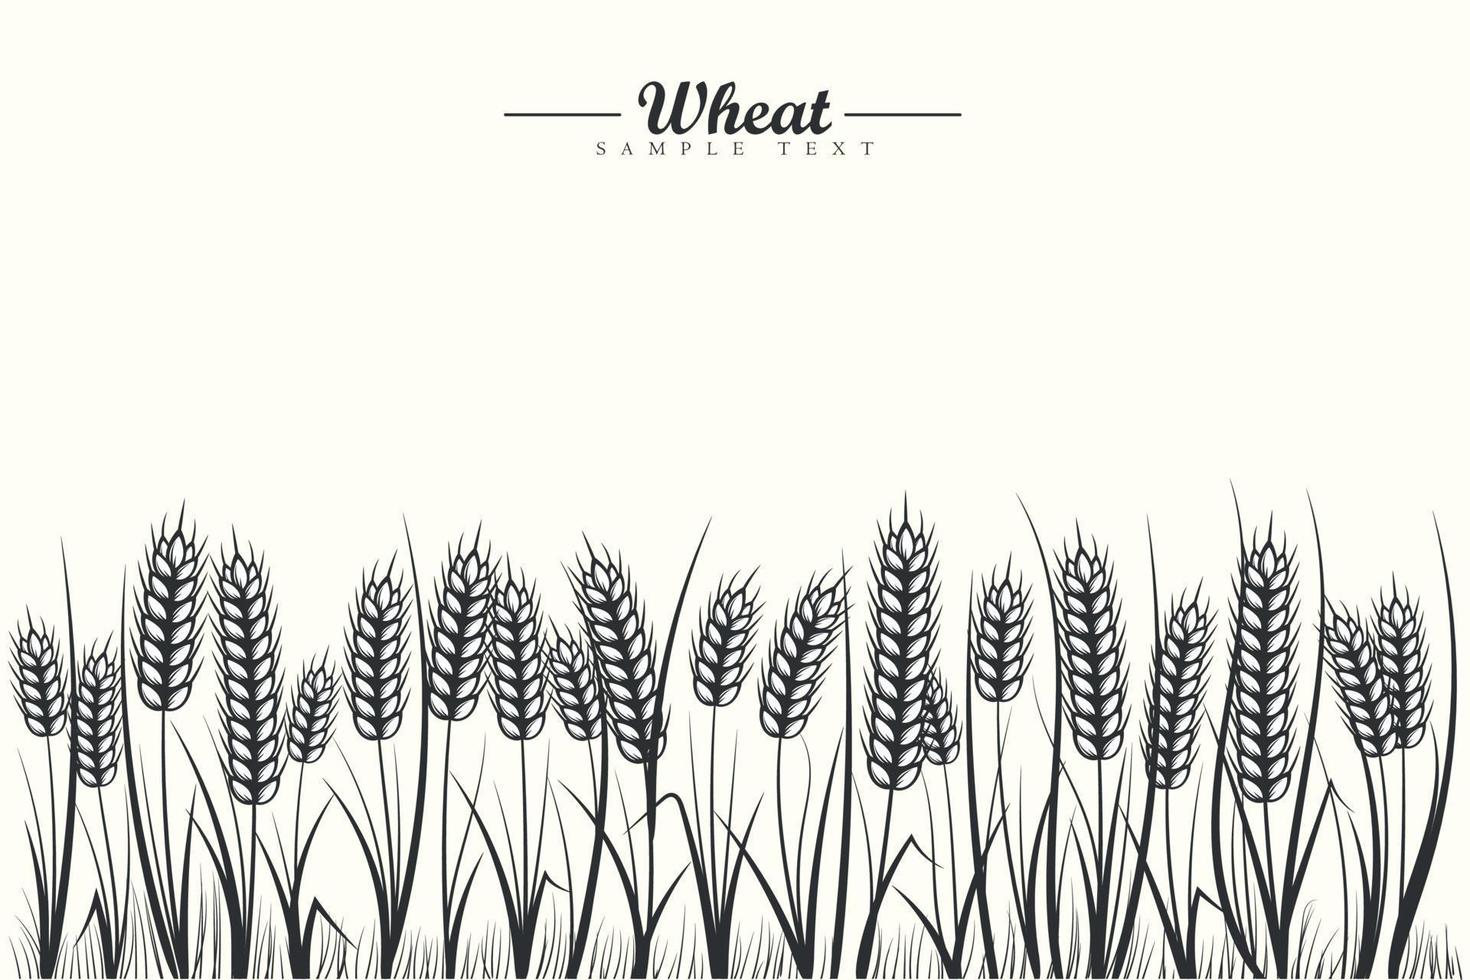 Schwarzweiss-Weizengetreidefeldhintergrund mit Weizenähren und Weizenblatt auf weißem Hintergrund vektor